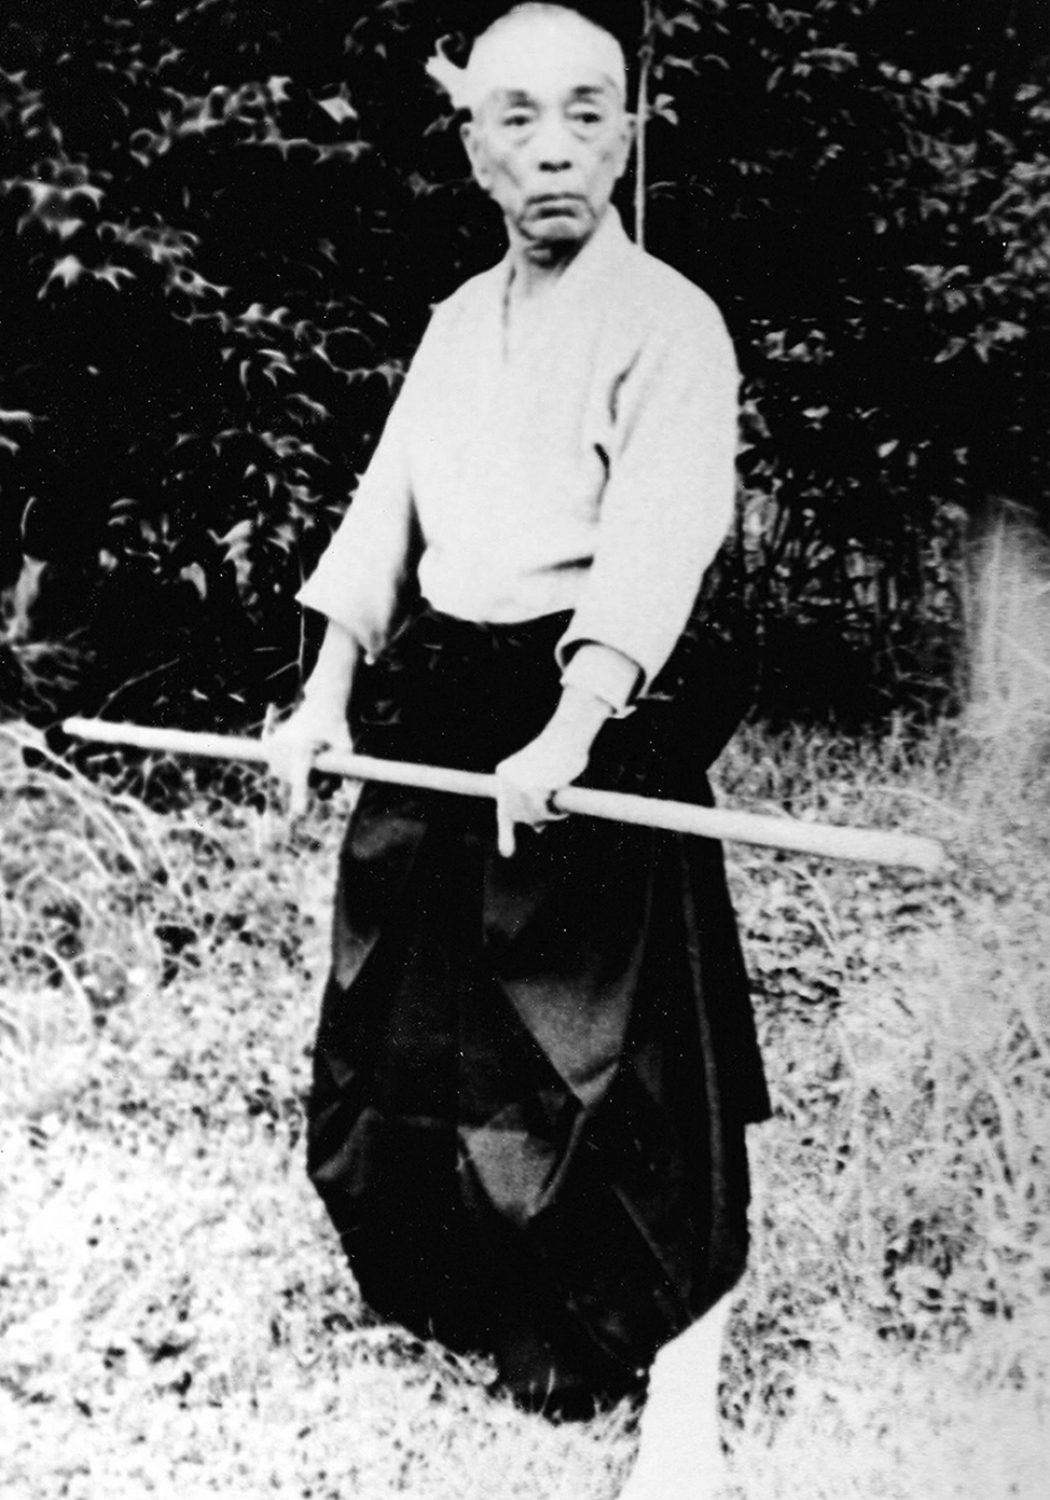 Dr. Masaaki Hatsumi